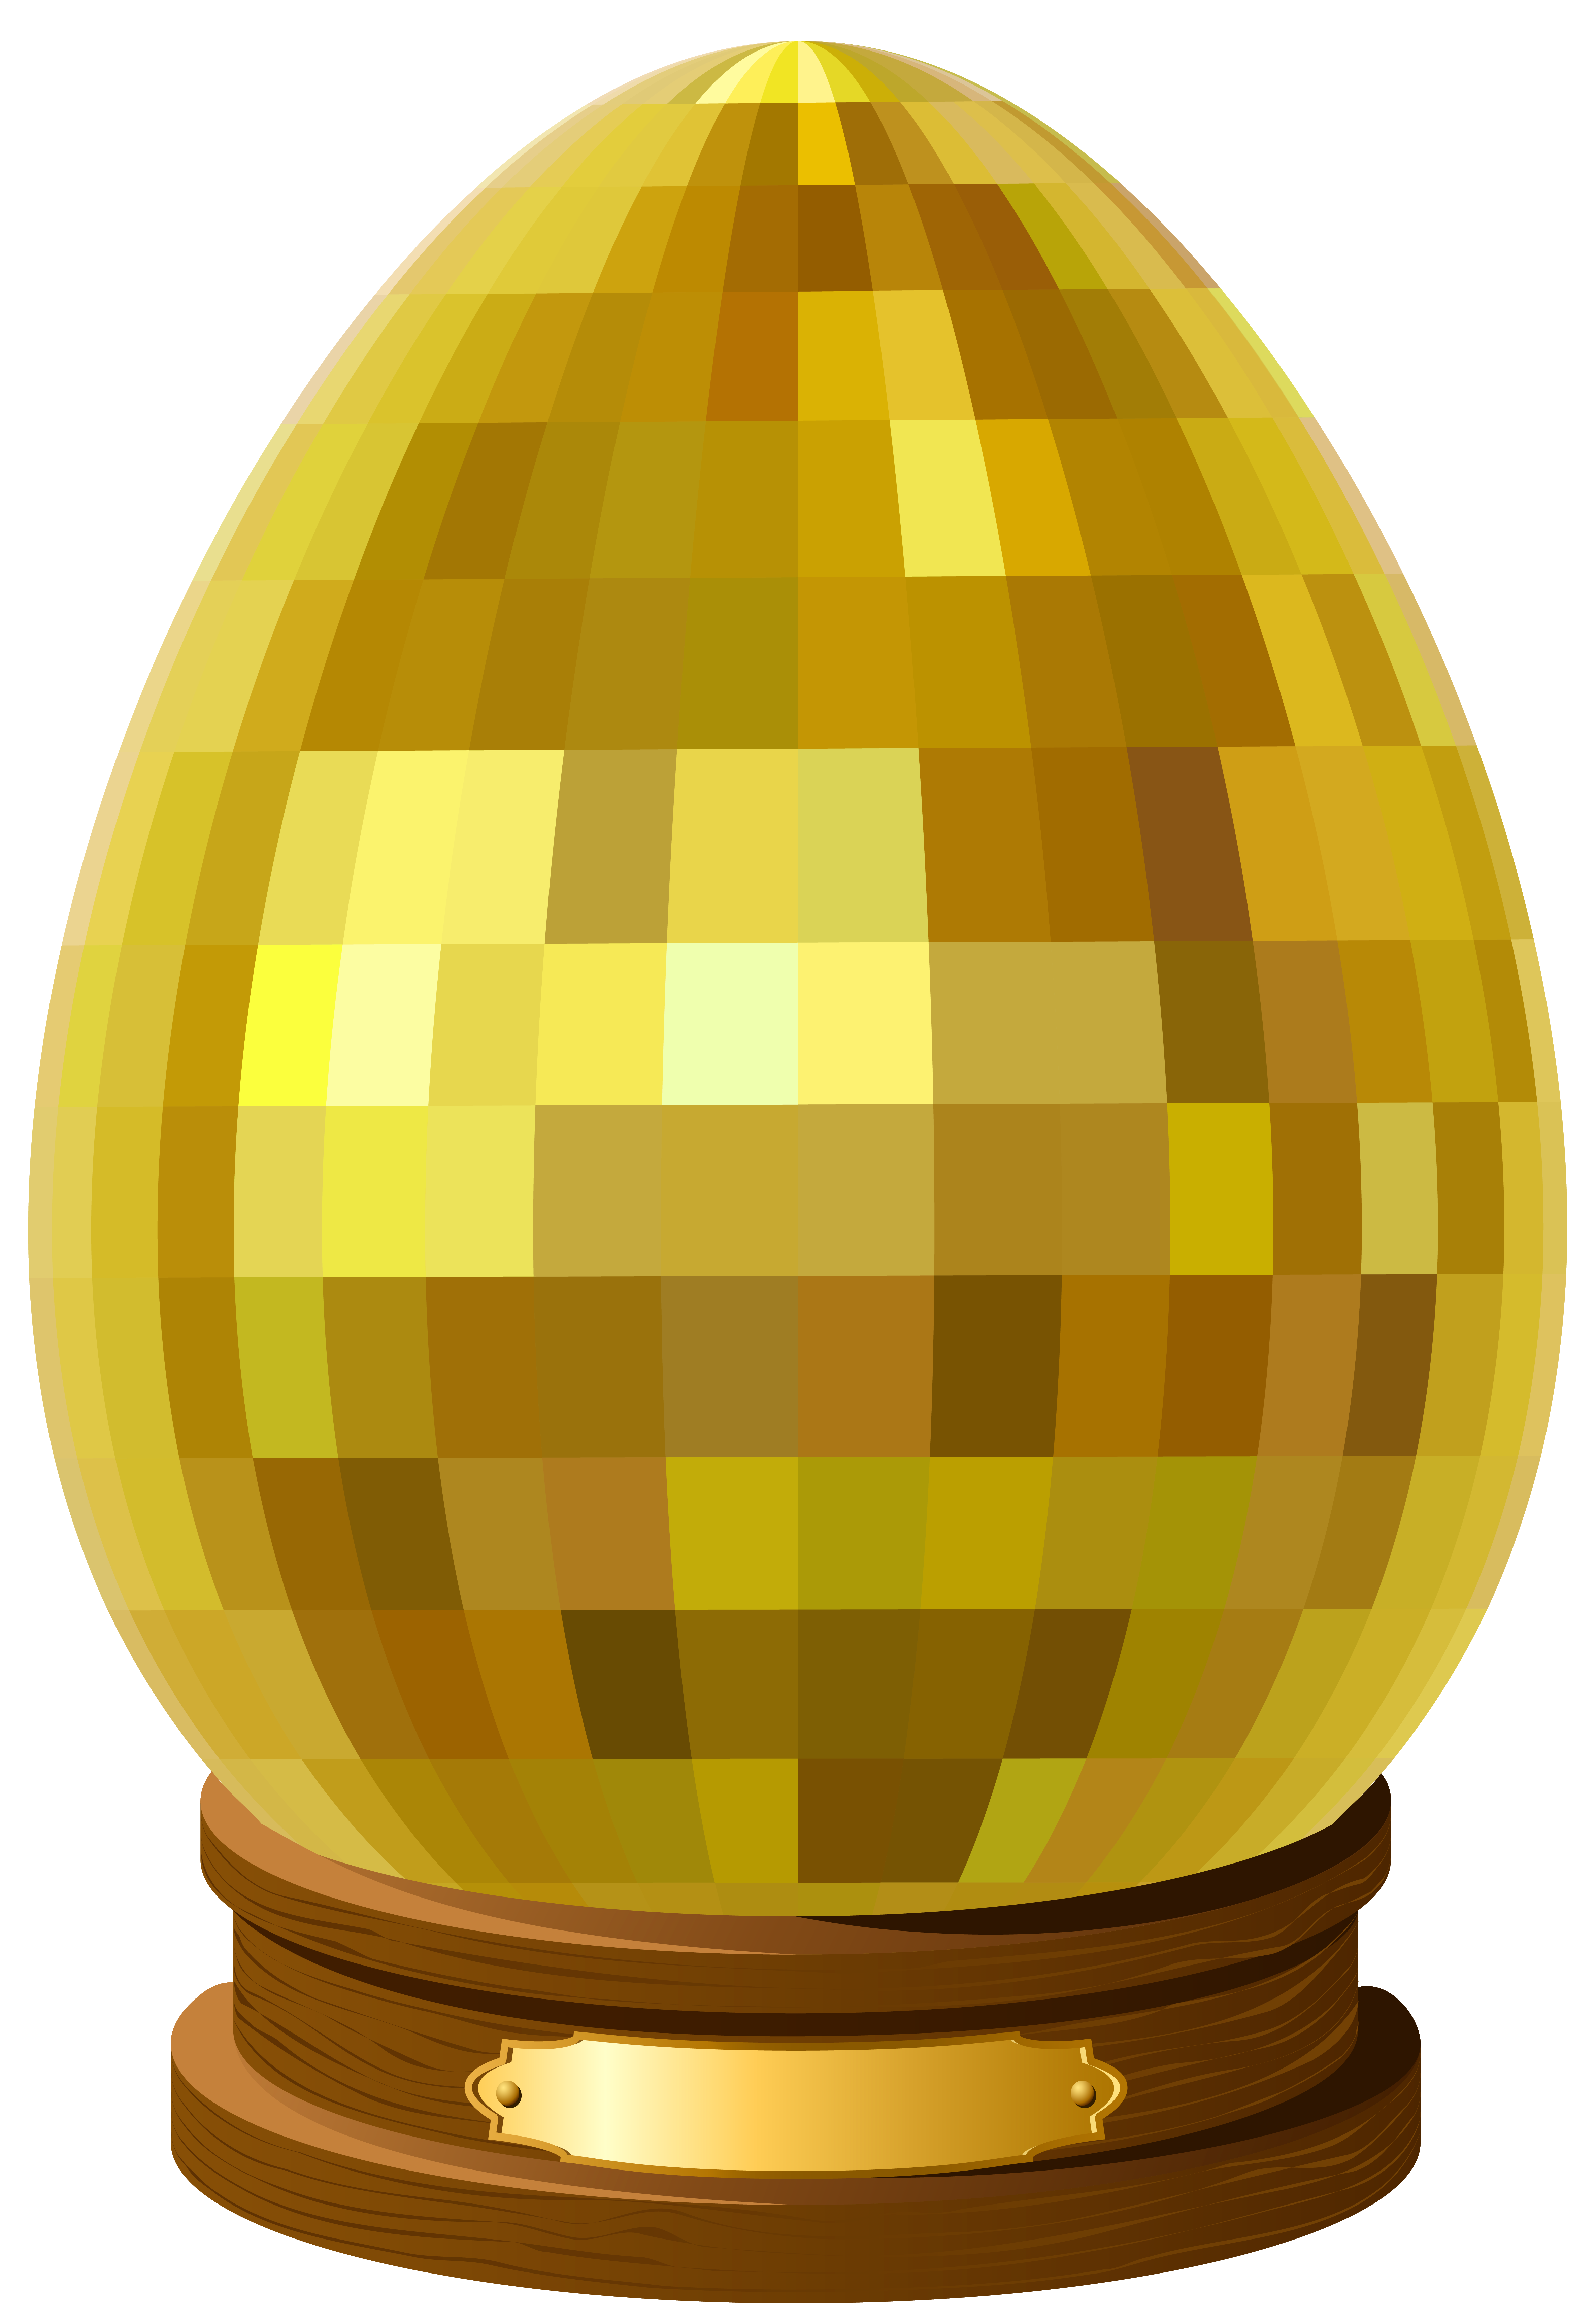 Golden egg png images